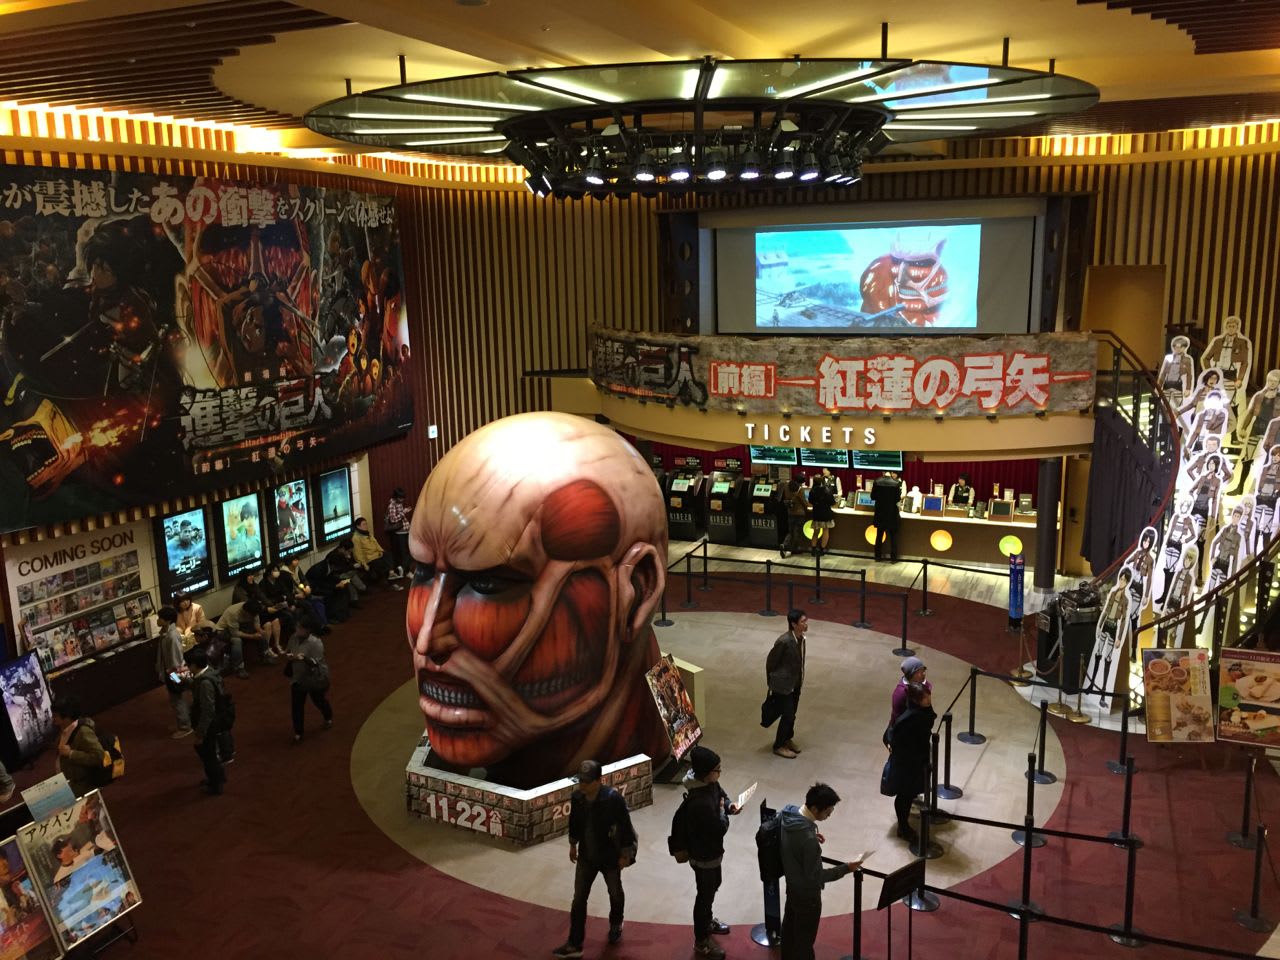 映画館でアニメ観賞 新宿バルト9 劇場版 進撃の巨人 前編 紅蓮の弓矢 14 11 22 Explore